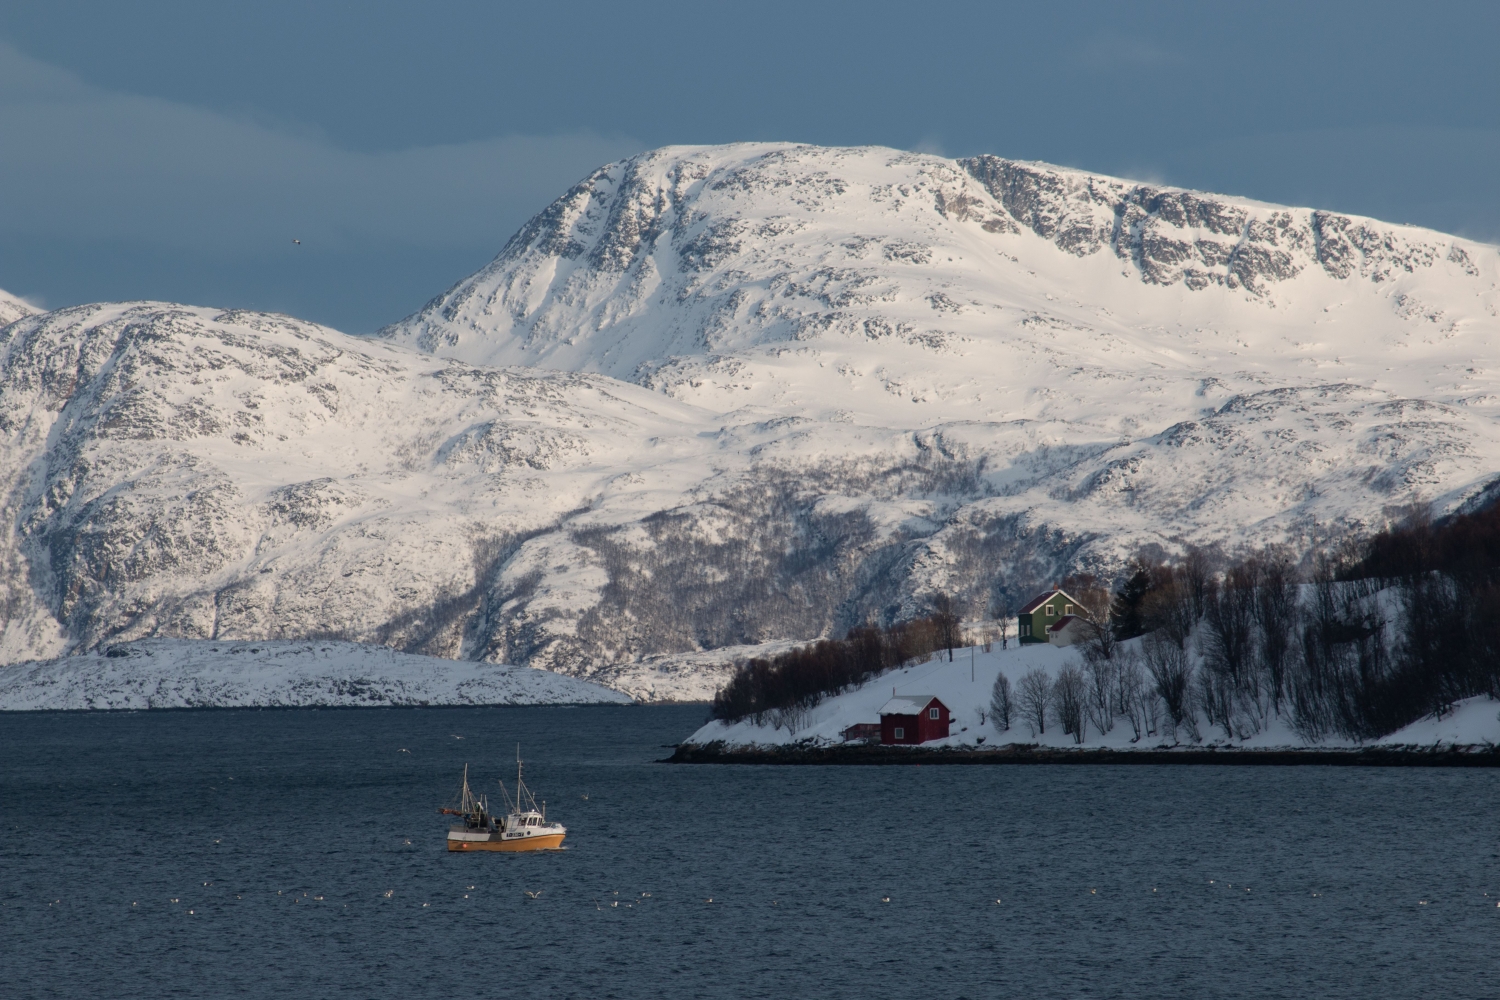 Sommarøy Arctic day trip- a round tour of Kvaløya island